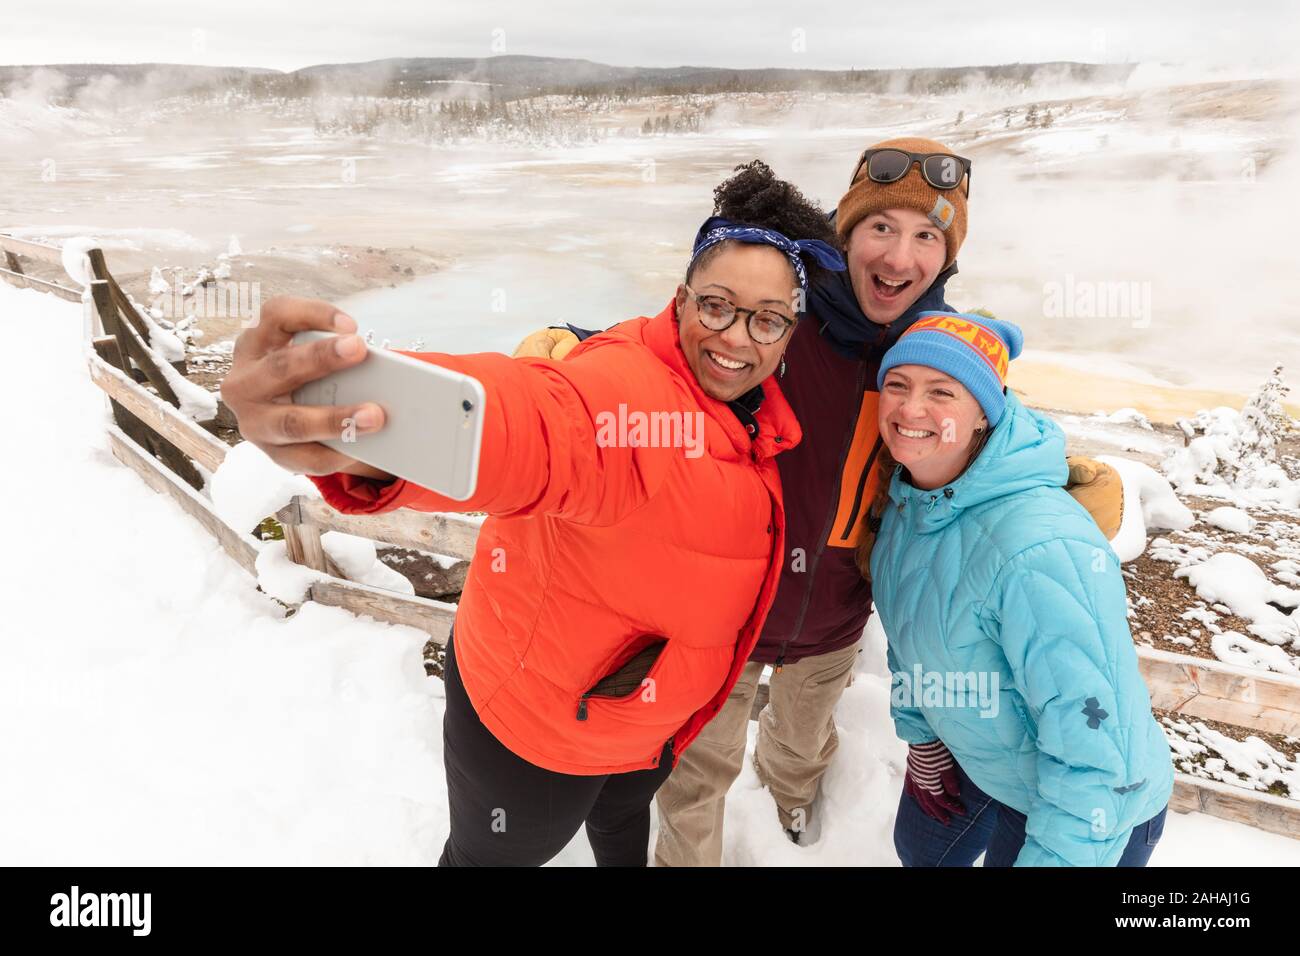 Les touristes prennent un sur la neige couverts selfies promenade autour du bassin en porcelaine au Norris Geyser Basin en hiver 20 décembre 2019 au Parc National de Yellowstone, Wyoming. Banque D'Images